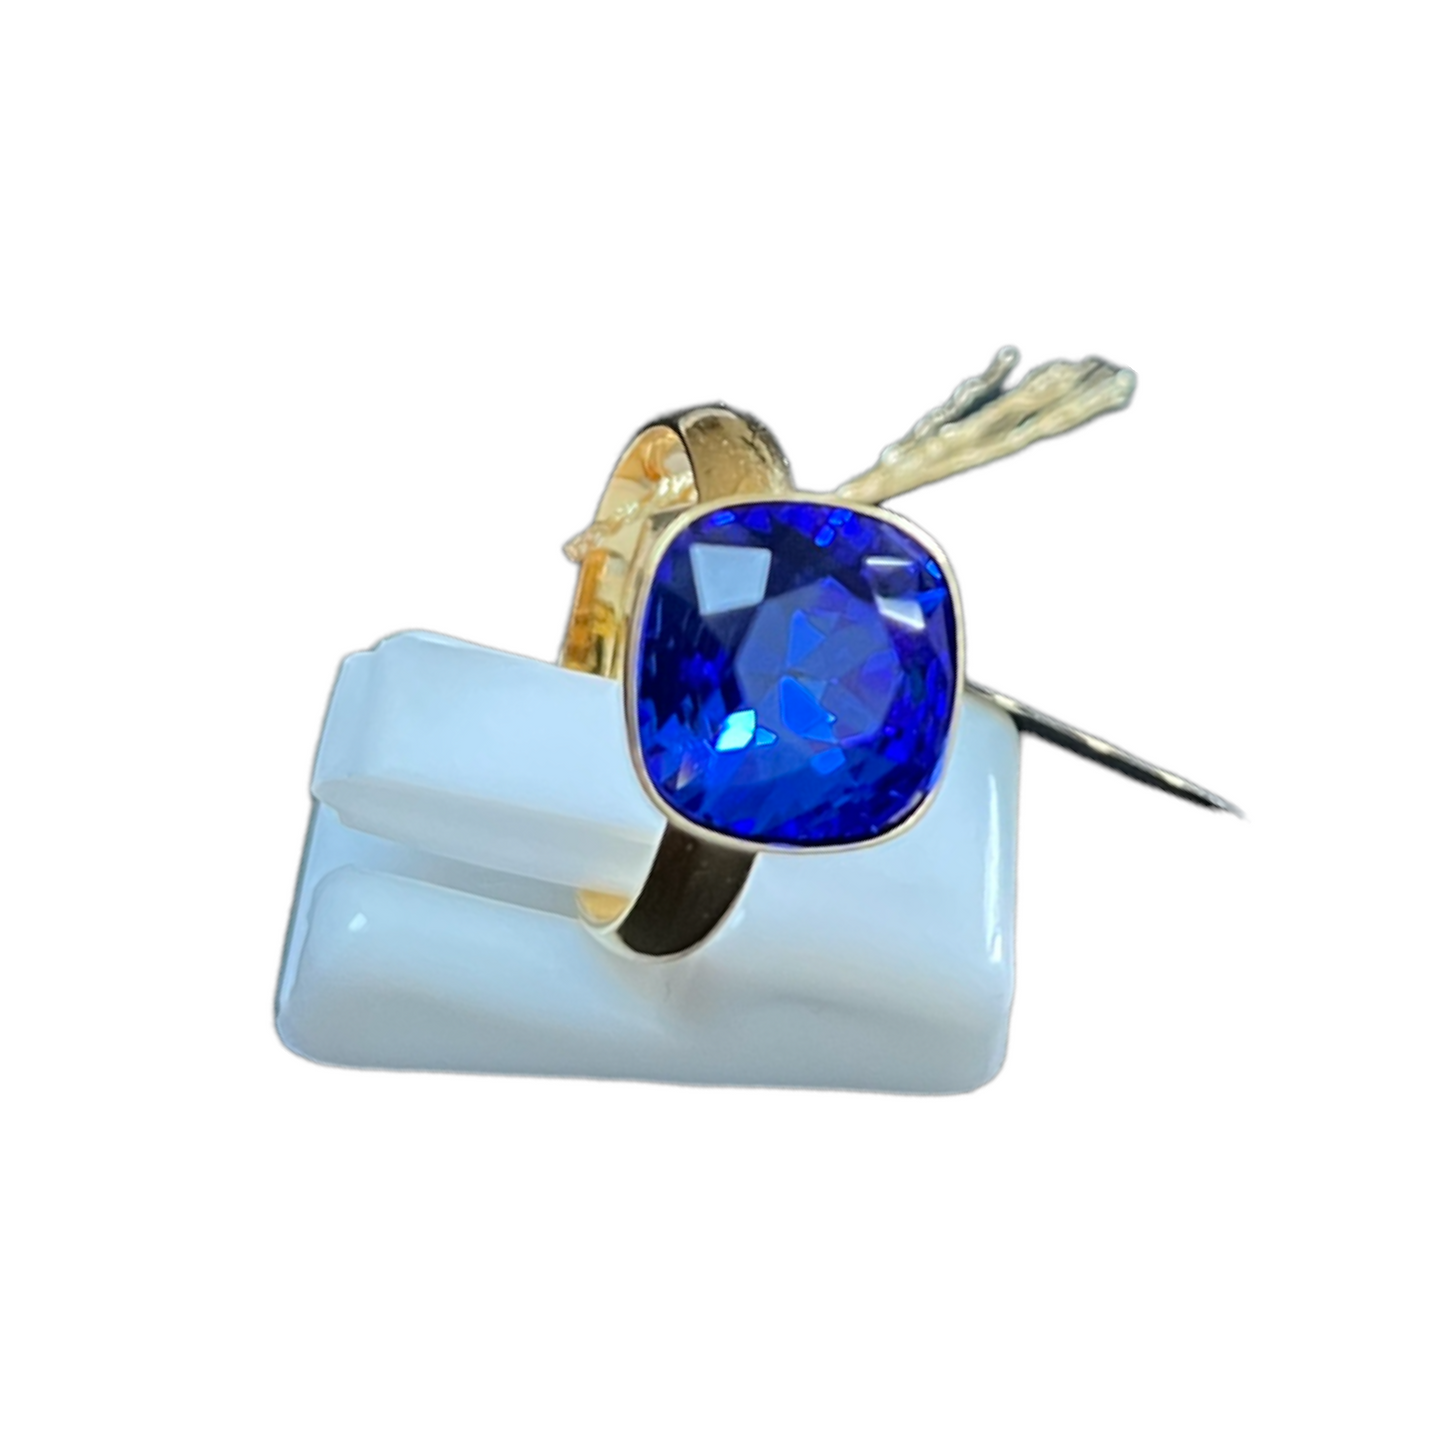 Bague avec cristaux Swarovski, collection KIM, bleu outremer, argent doré